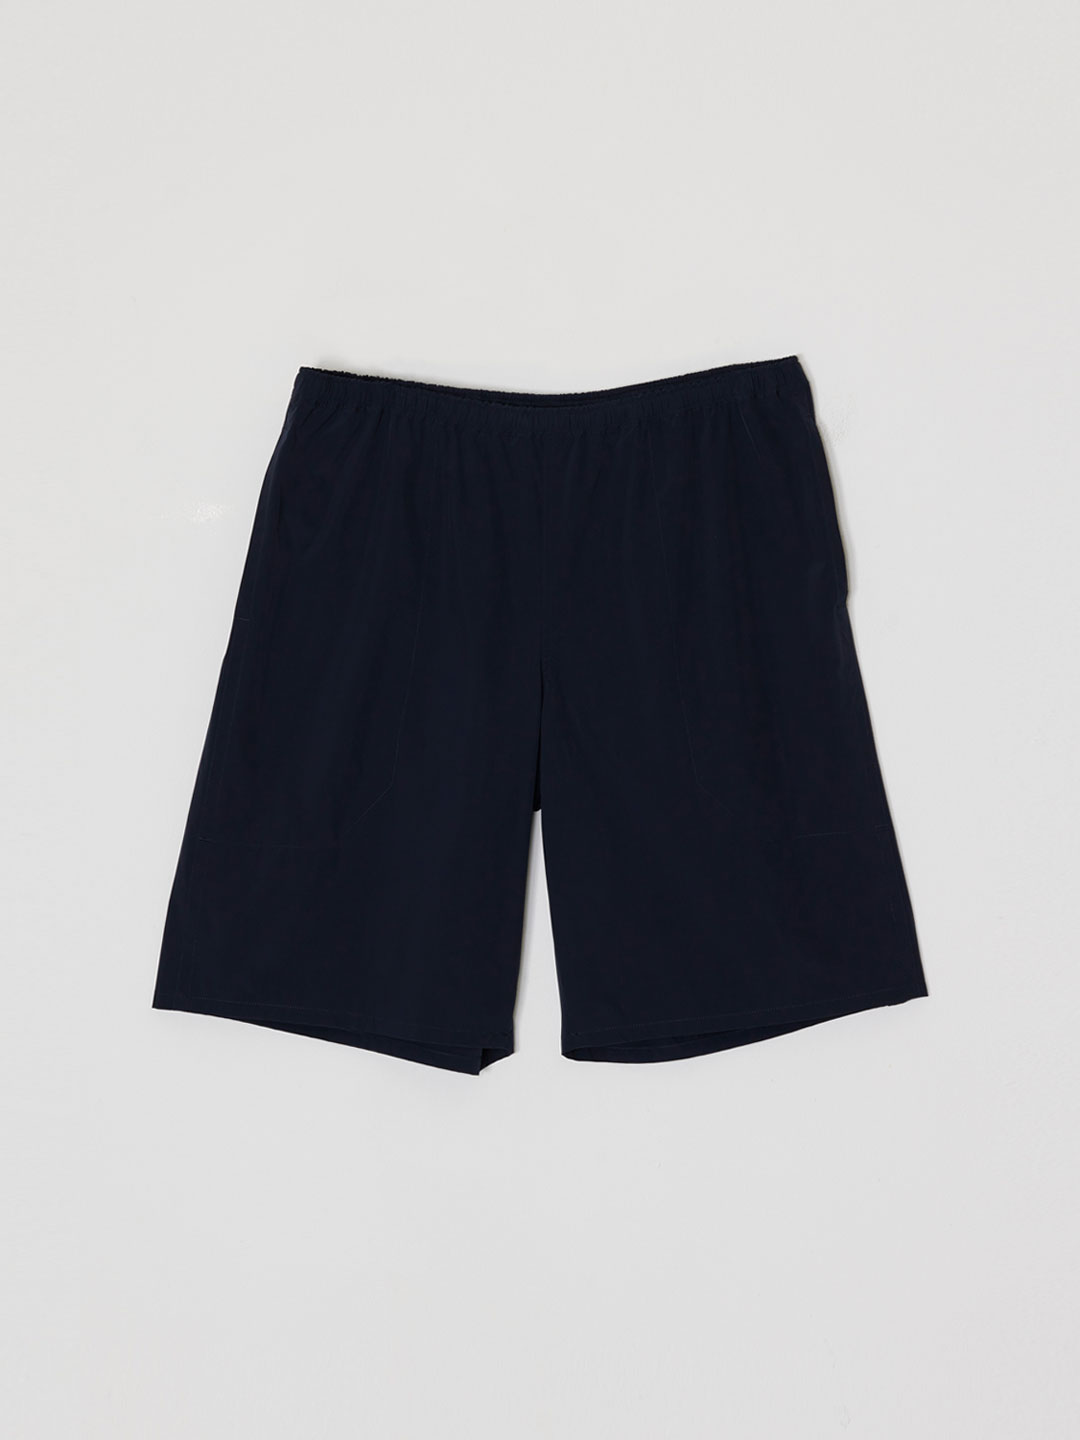 Ultra 2Way Nylon Stretch Shorts - Navy